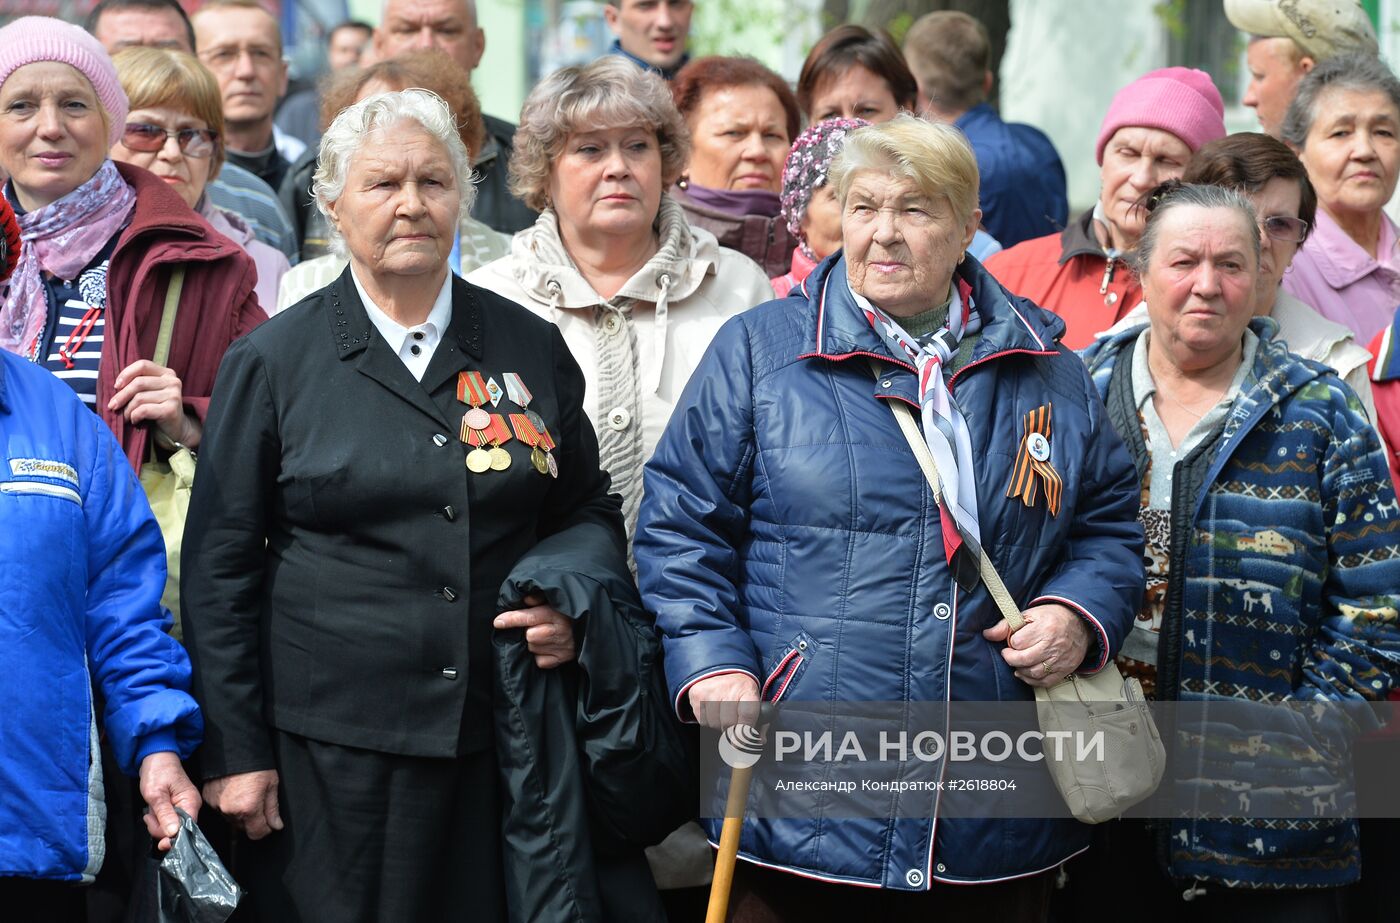 Открытие Памятника труженикам тыла в Челябинске